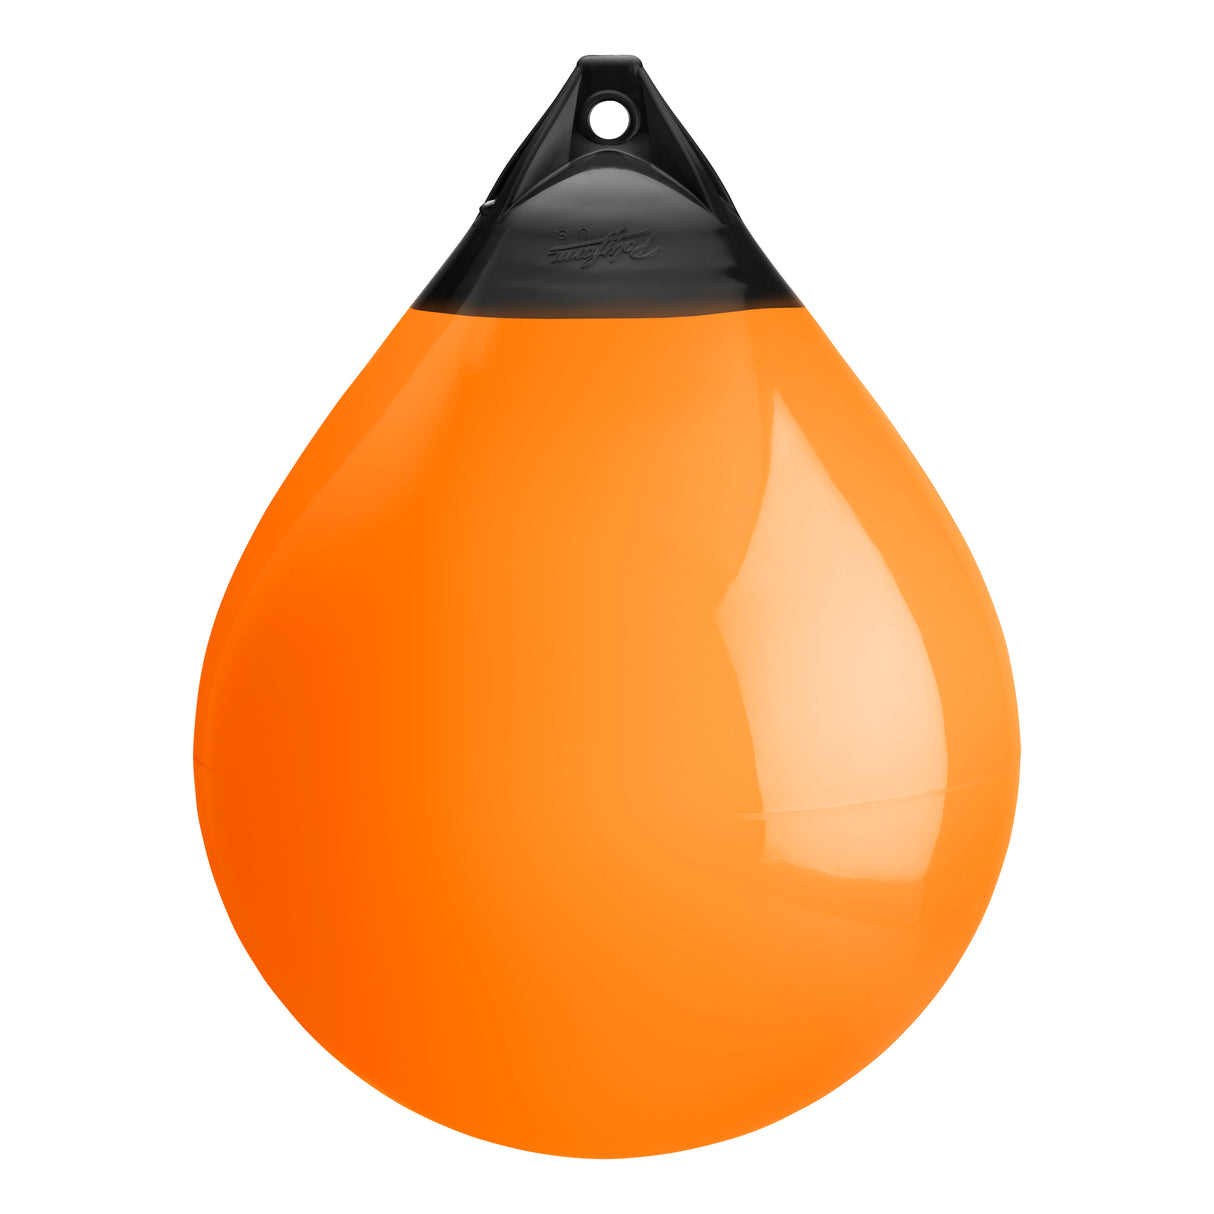 Orange buoy with Black-Top, Polyform A-6